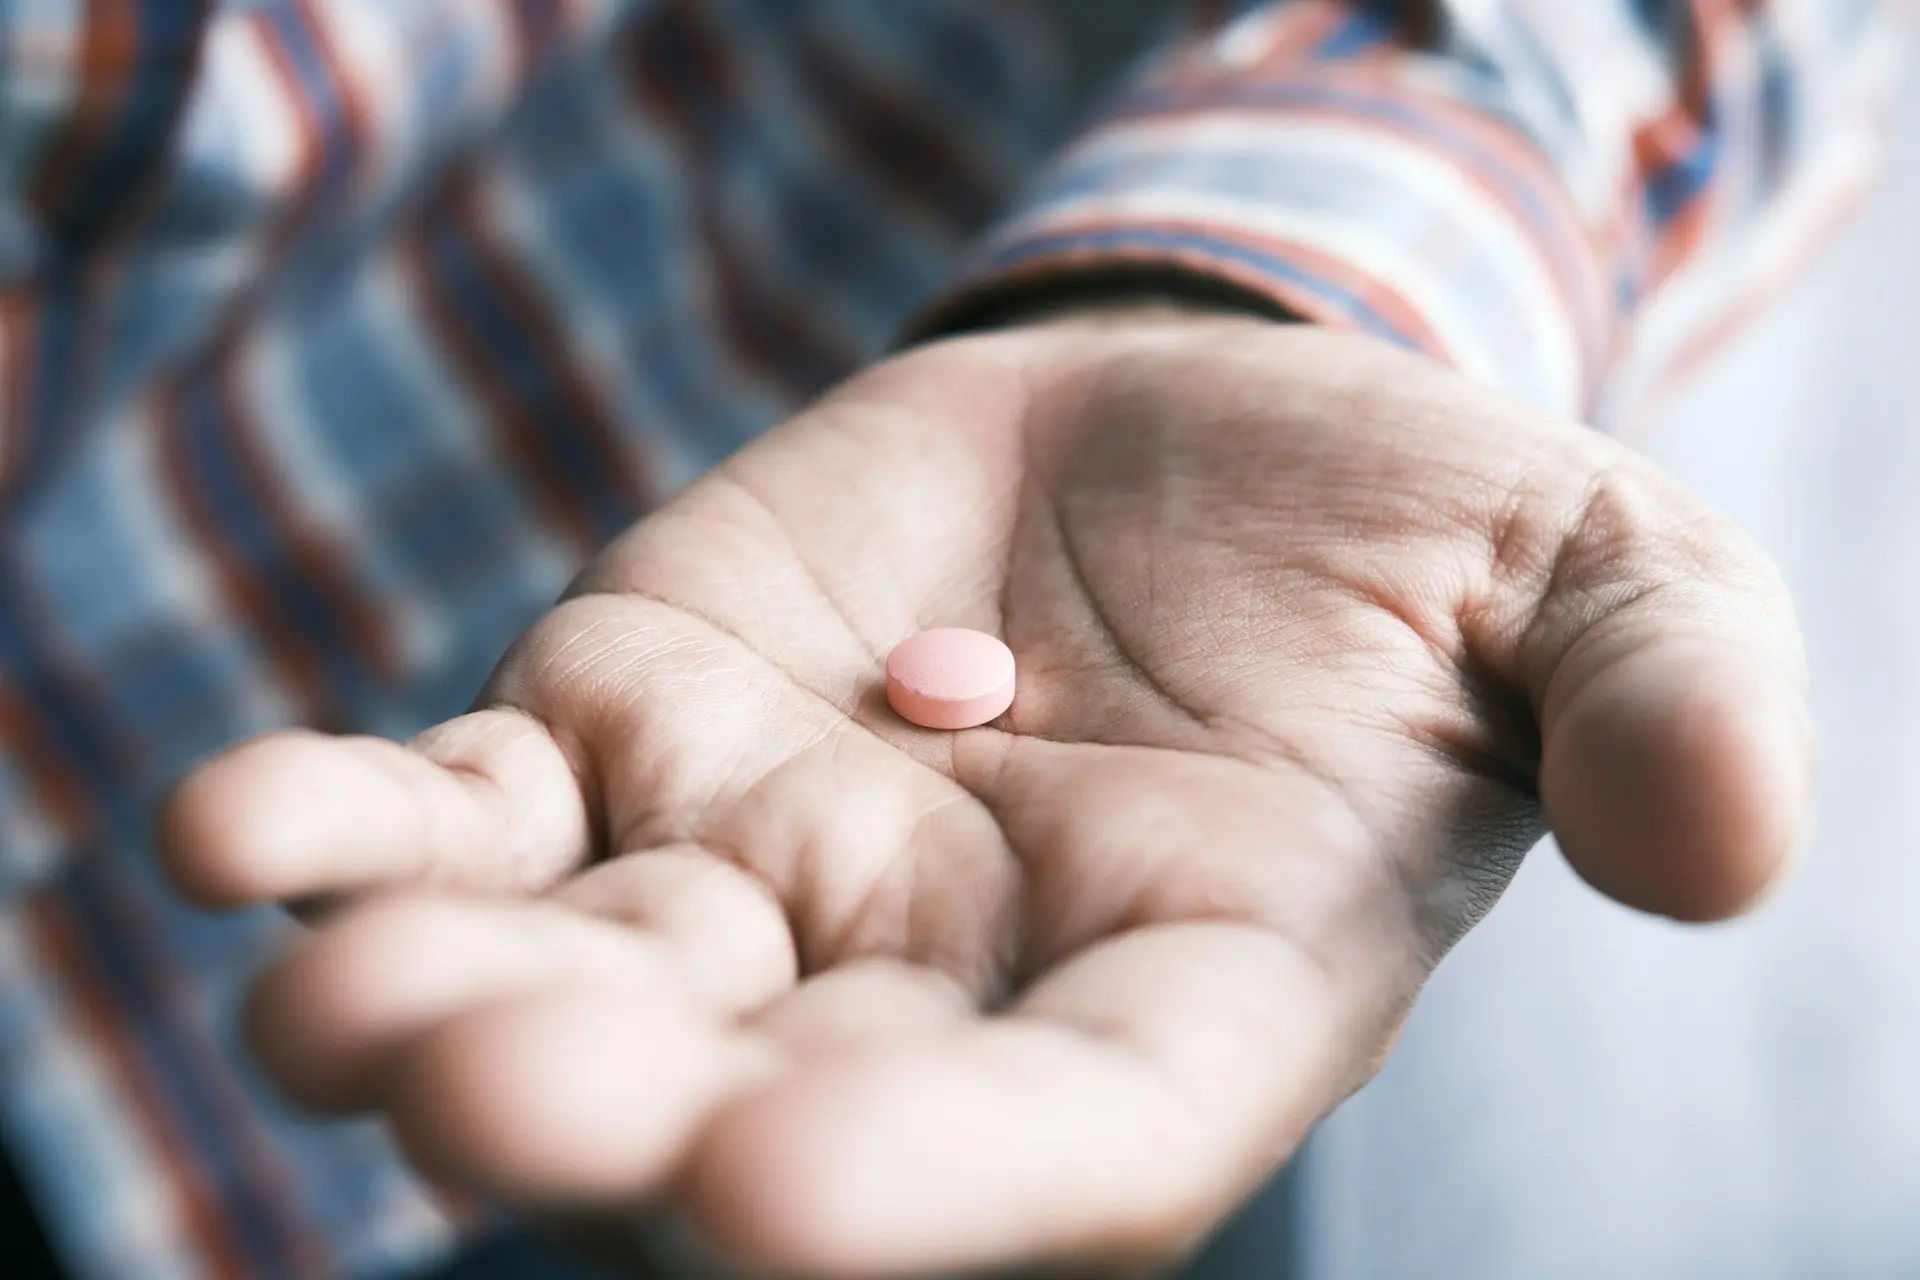 Протягом місяця чоловік вжив майже 1200 таблеток ібупрофену. Що трапилося з ним?